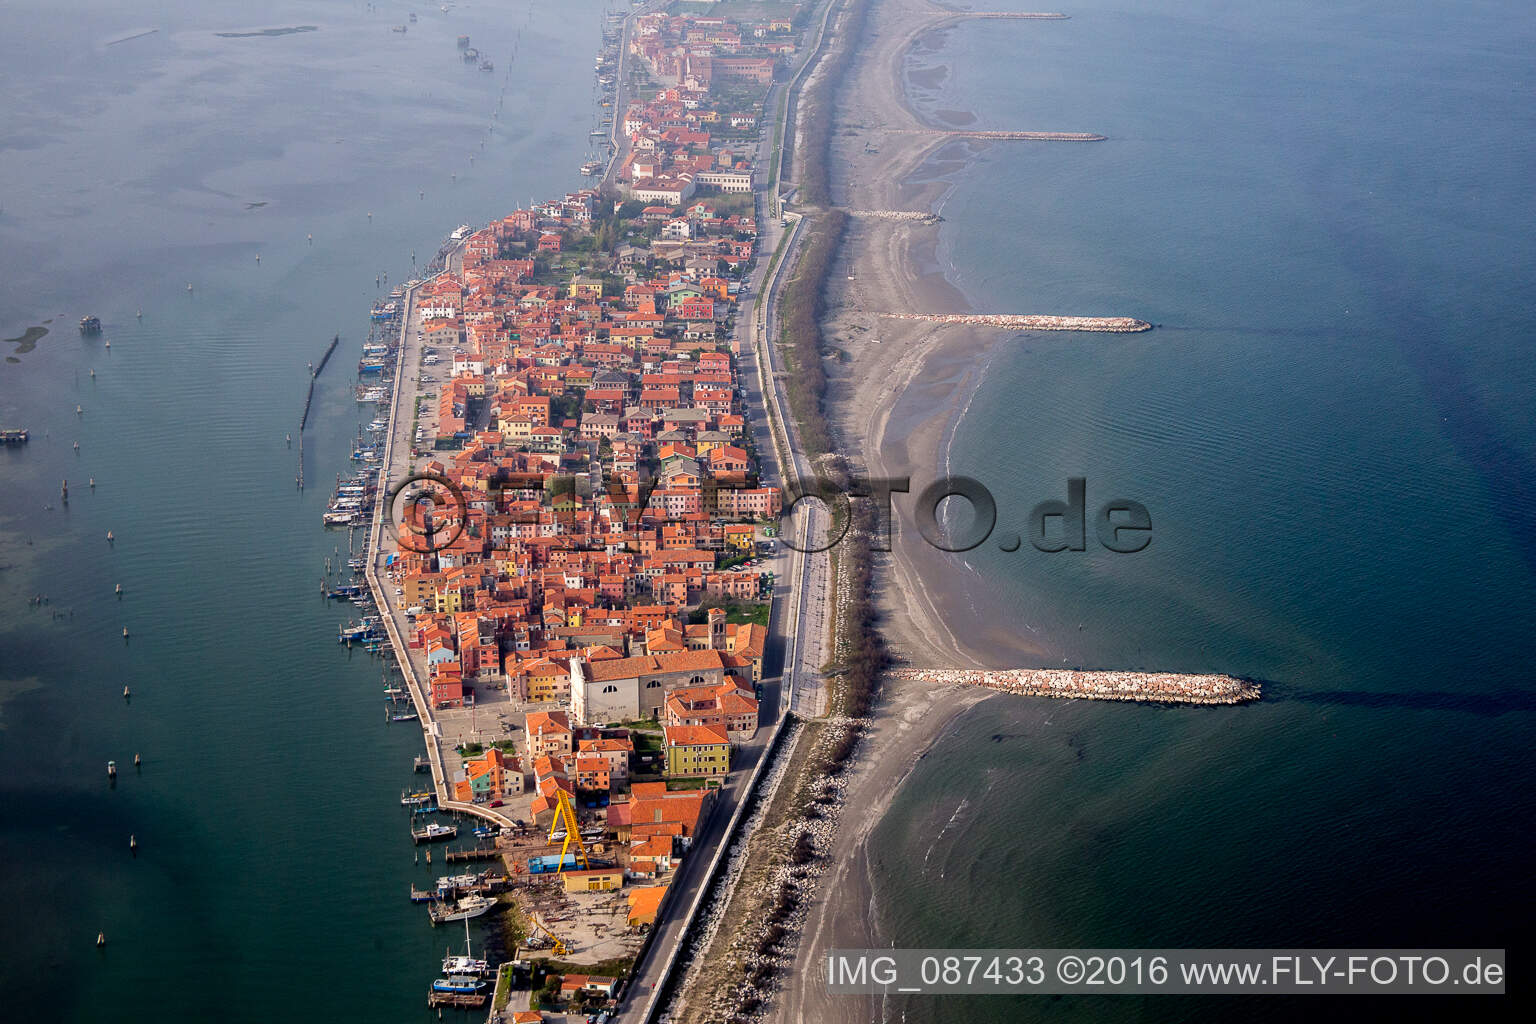 Oblique view of Settlement area in the district Pellestrina in Venedig in Venetien, Italy